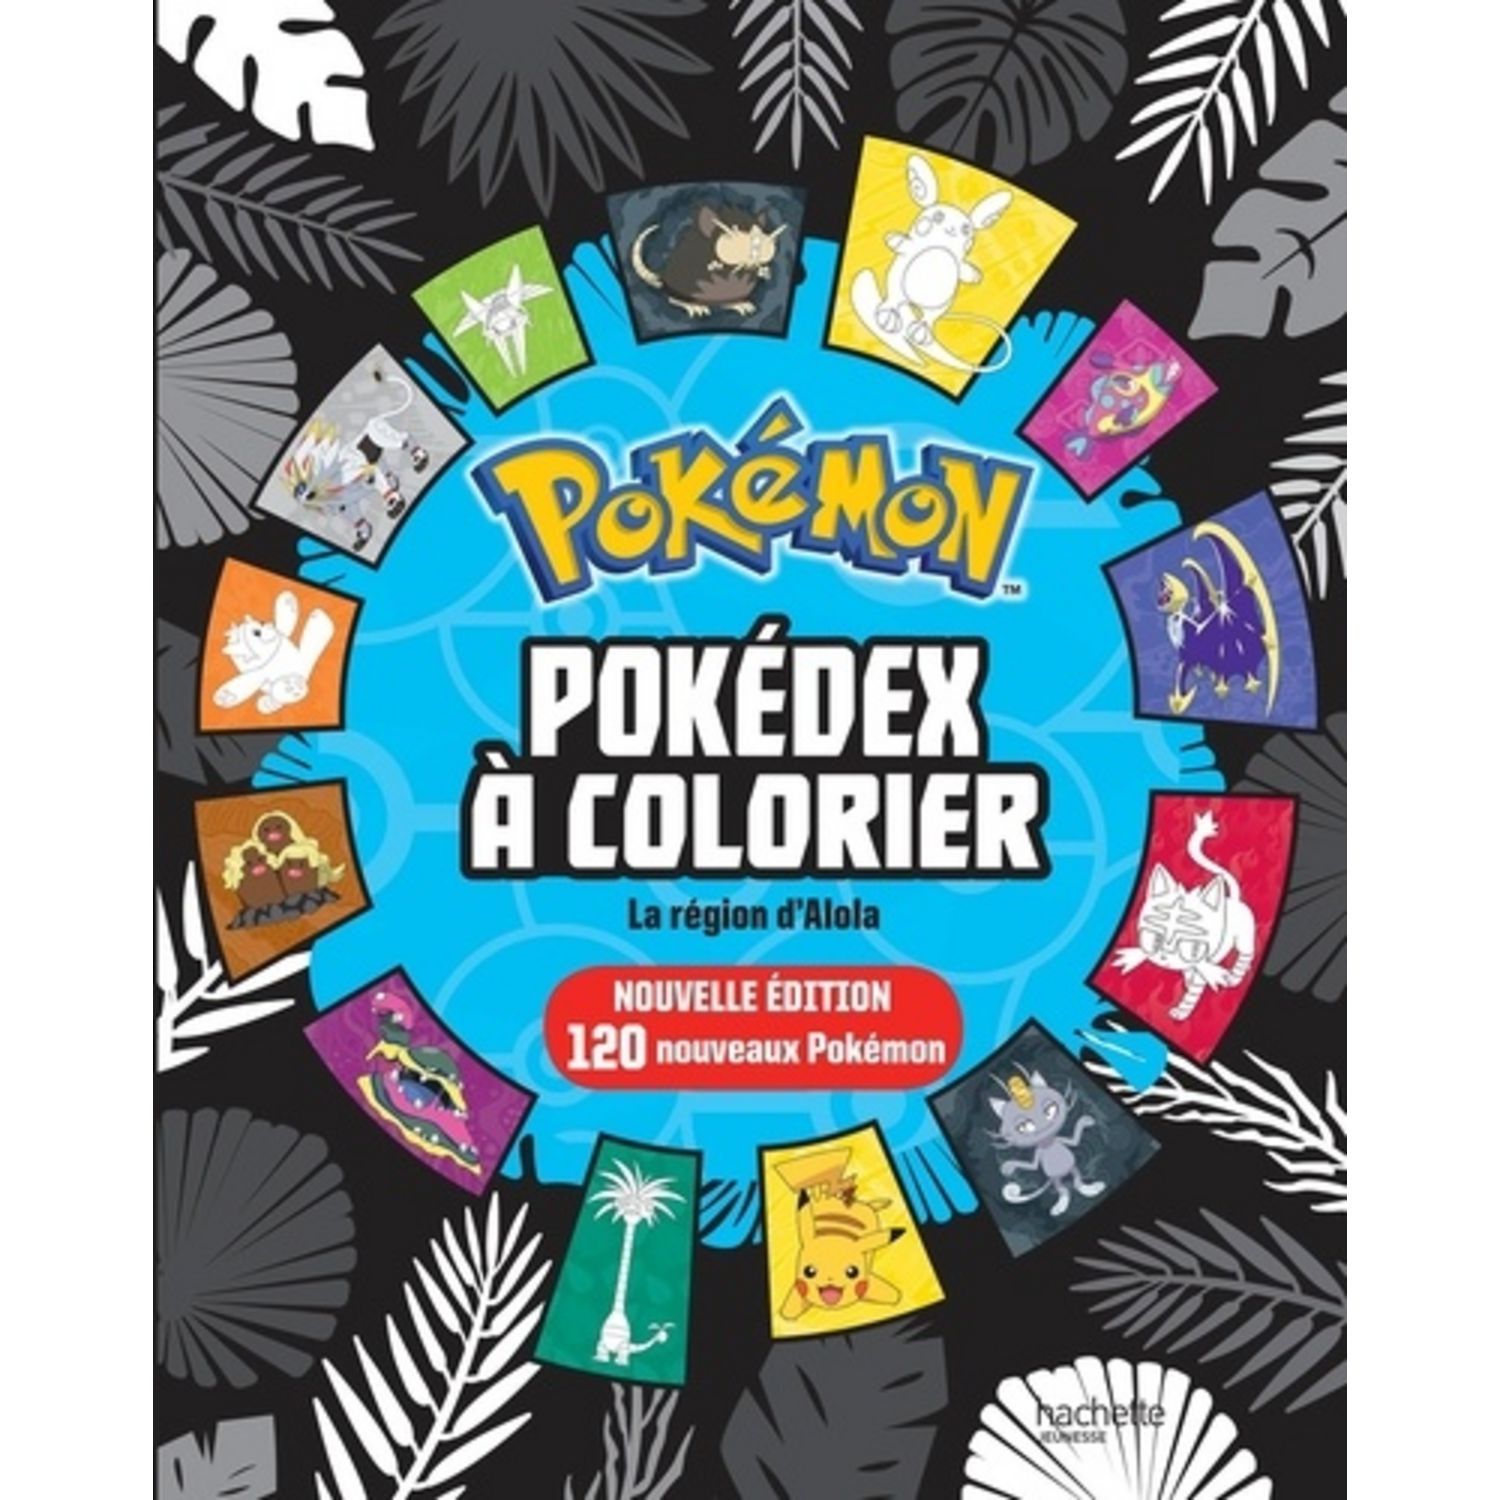 Les Pokémon - Pokémon - Pokédex de Kanto à Galar à colorier